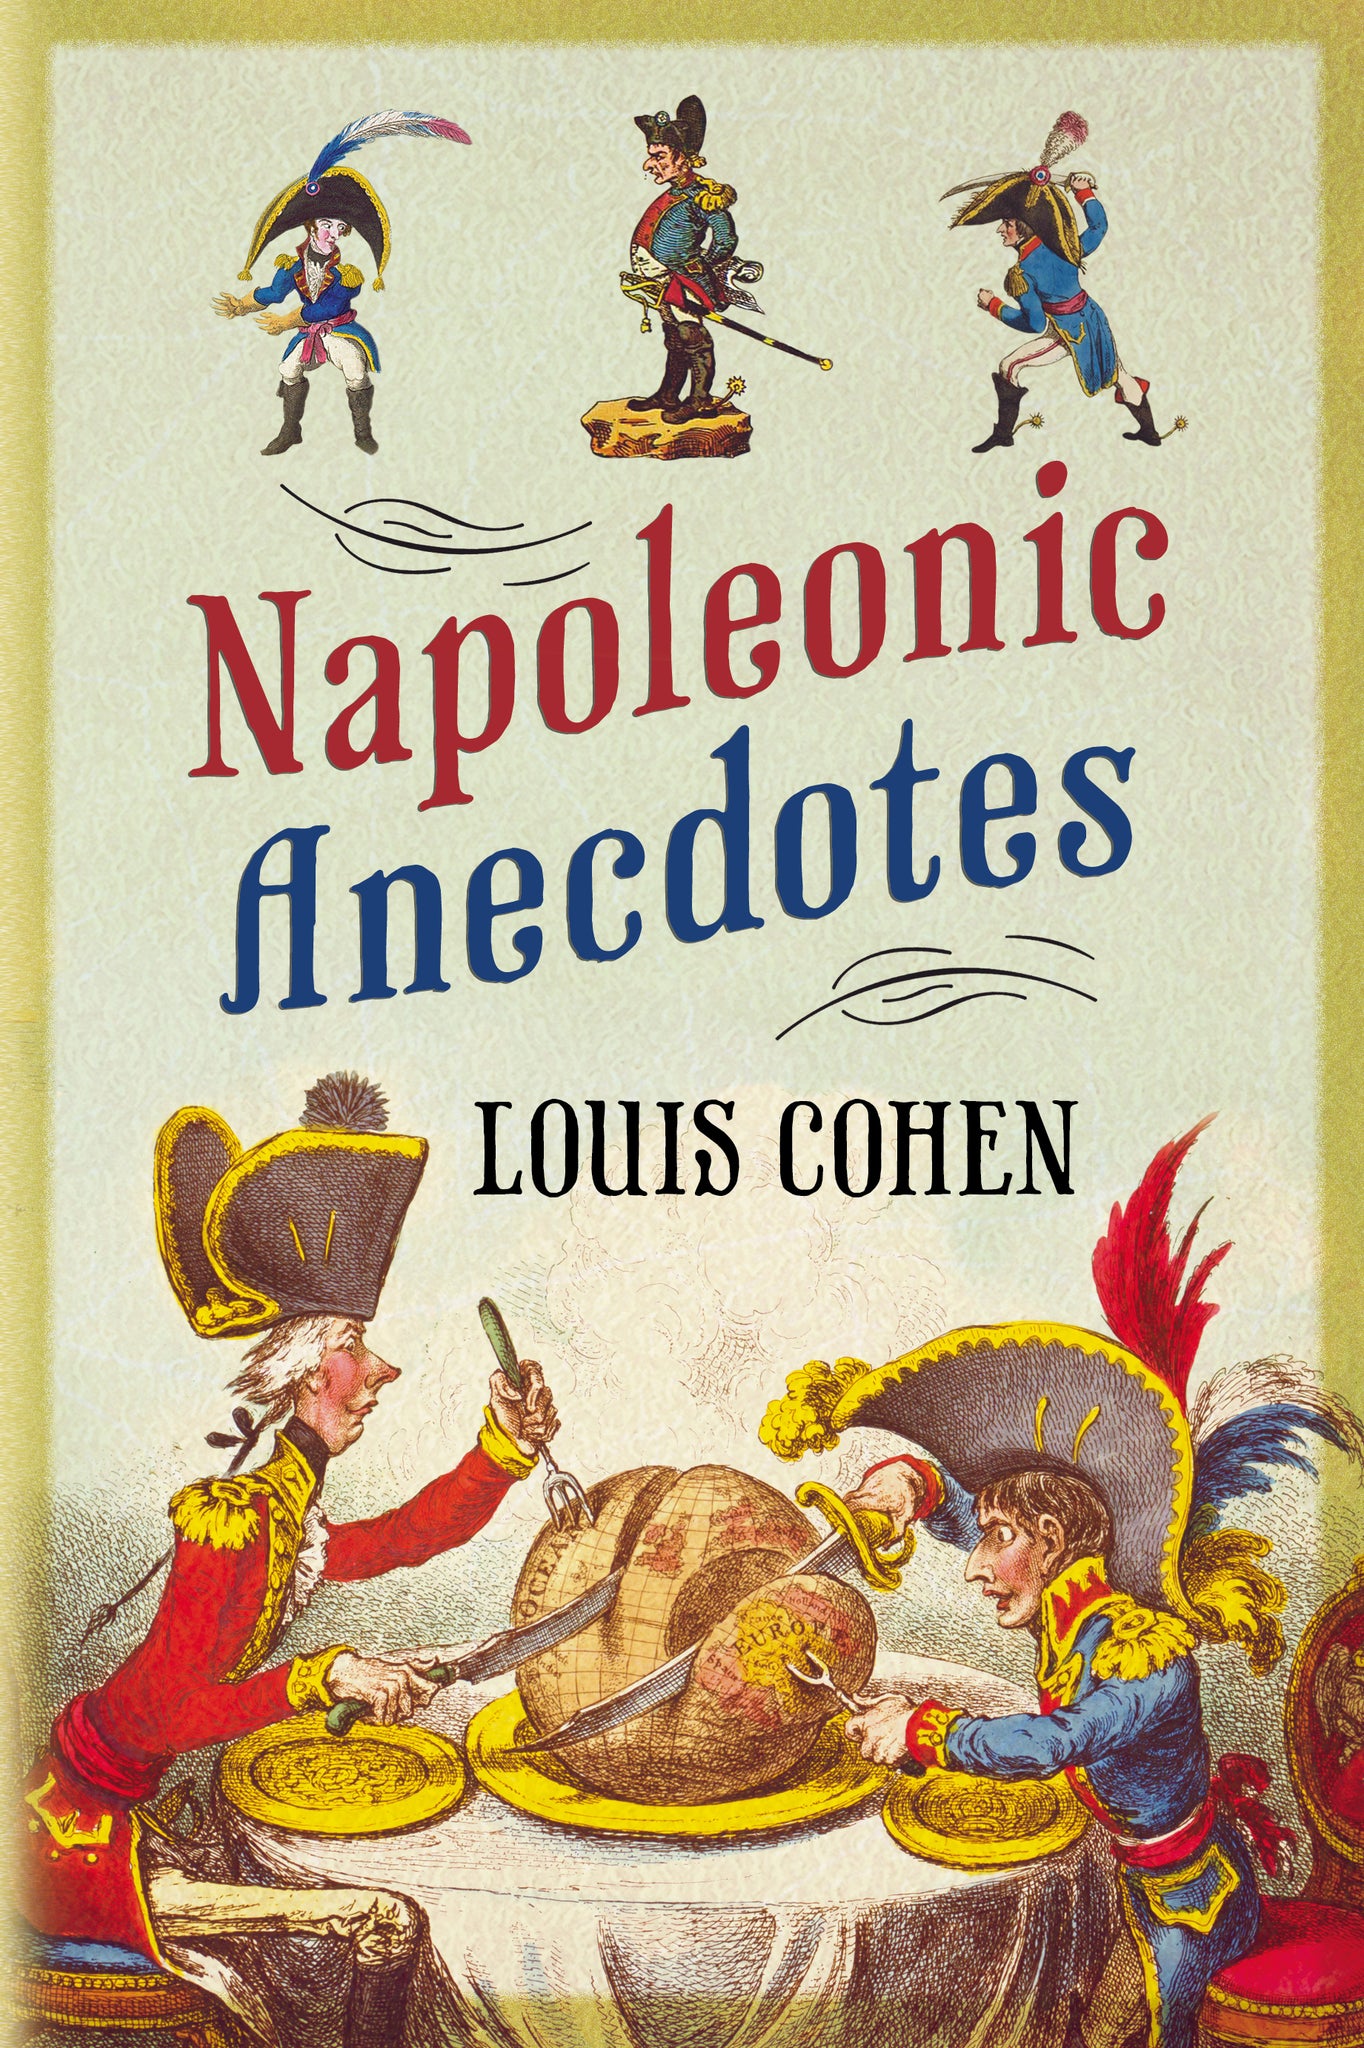 Napoleonic Anecdotes